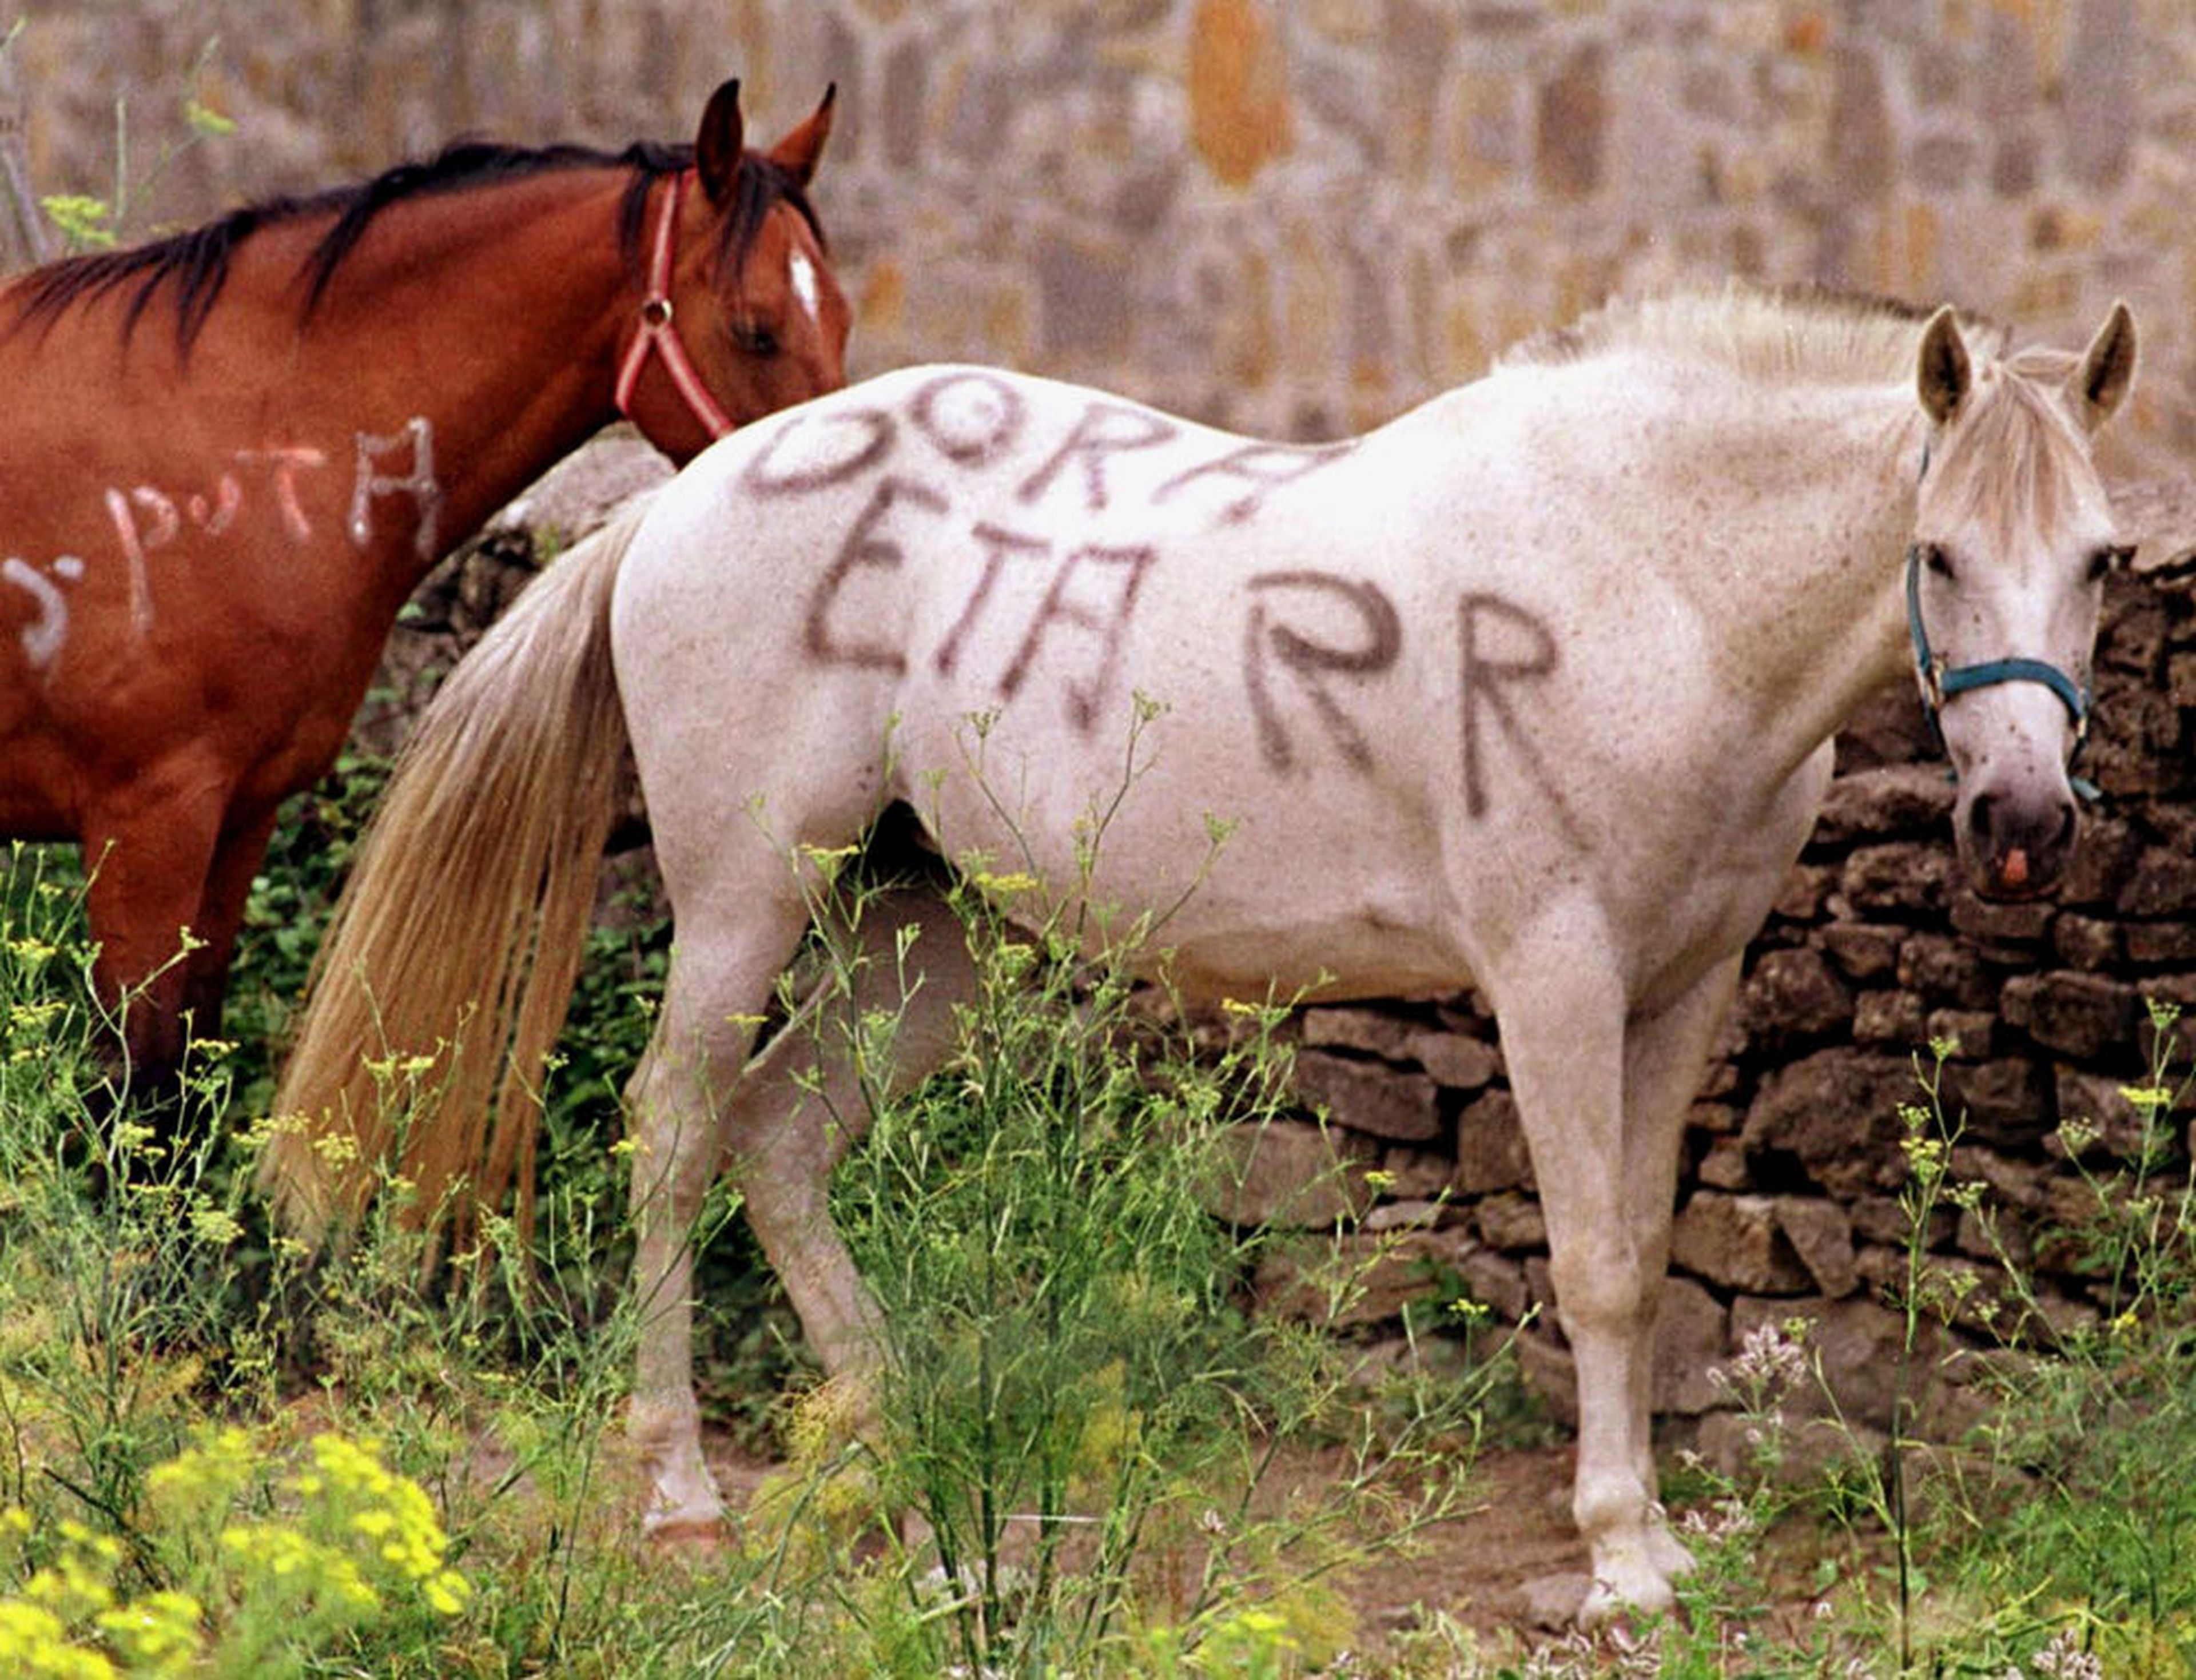 Los caballos de la familia de Abascal también sufrieron durante esta etapa pintadas en favor de ETA.